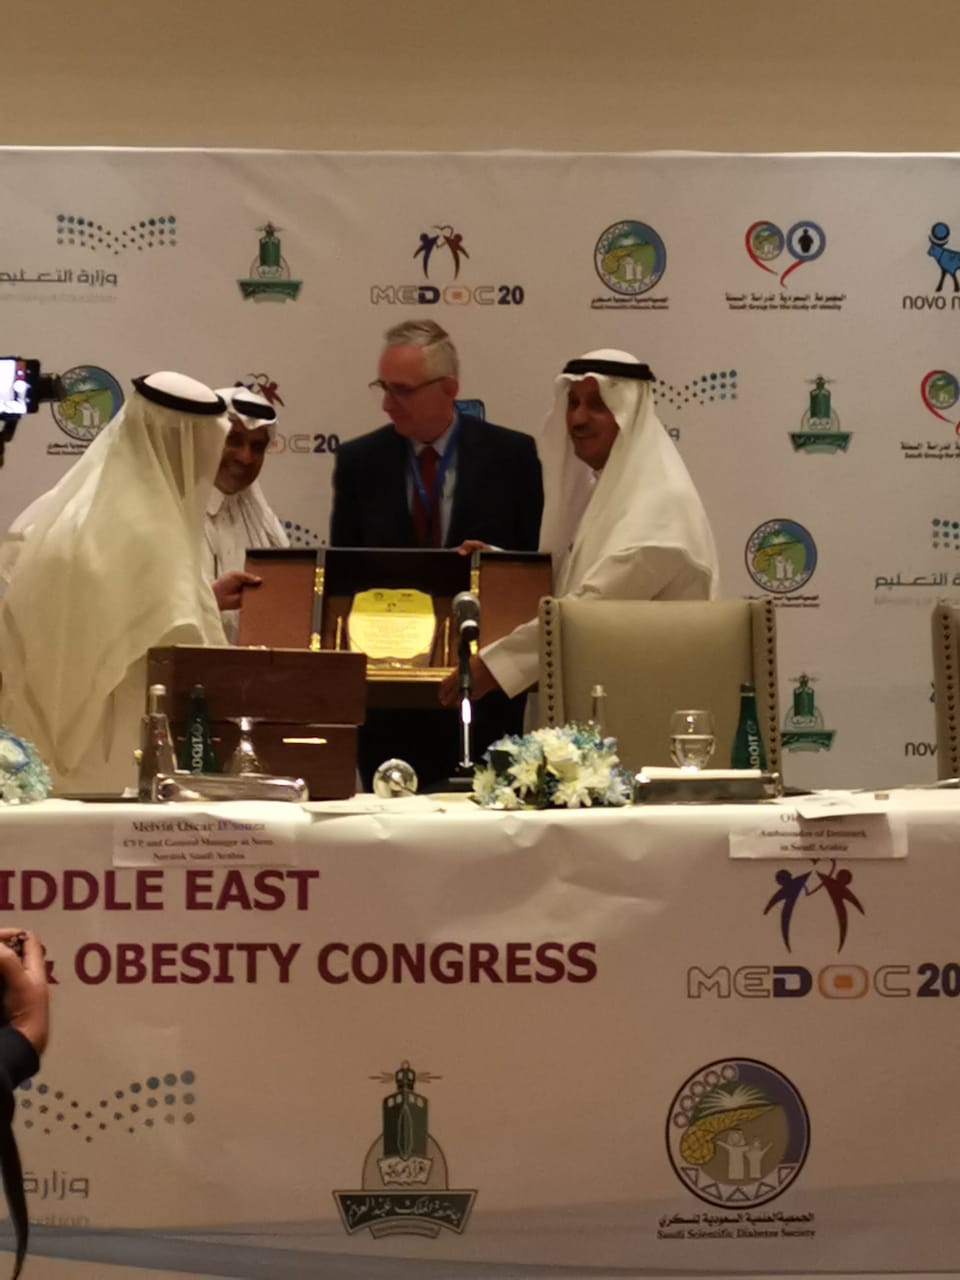 مدير جامعة الملك عبدالعزيز يفتتح مؤتمر الشرق الأوسط للسكري والسمنة